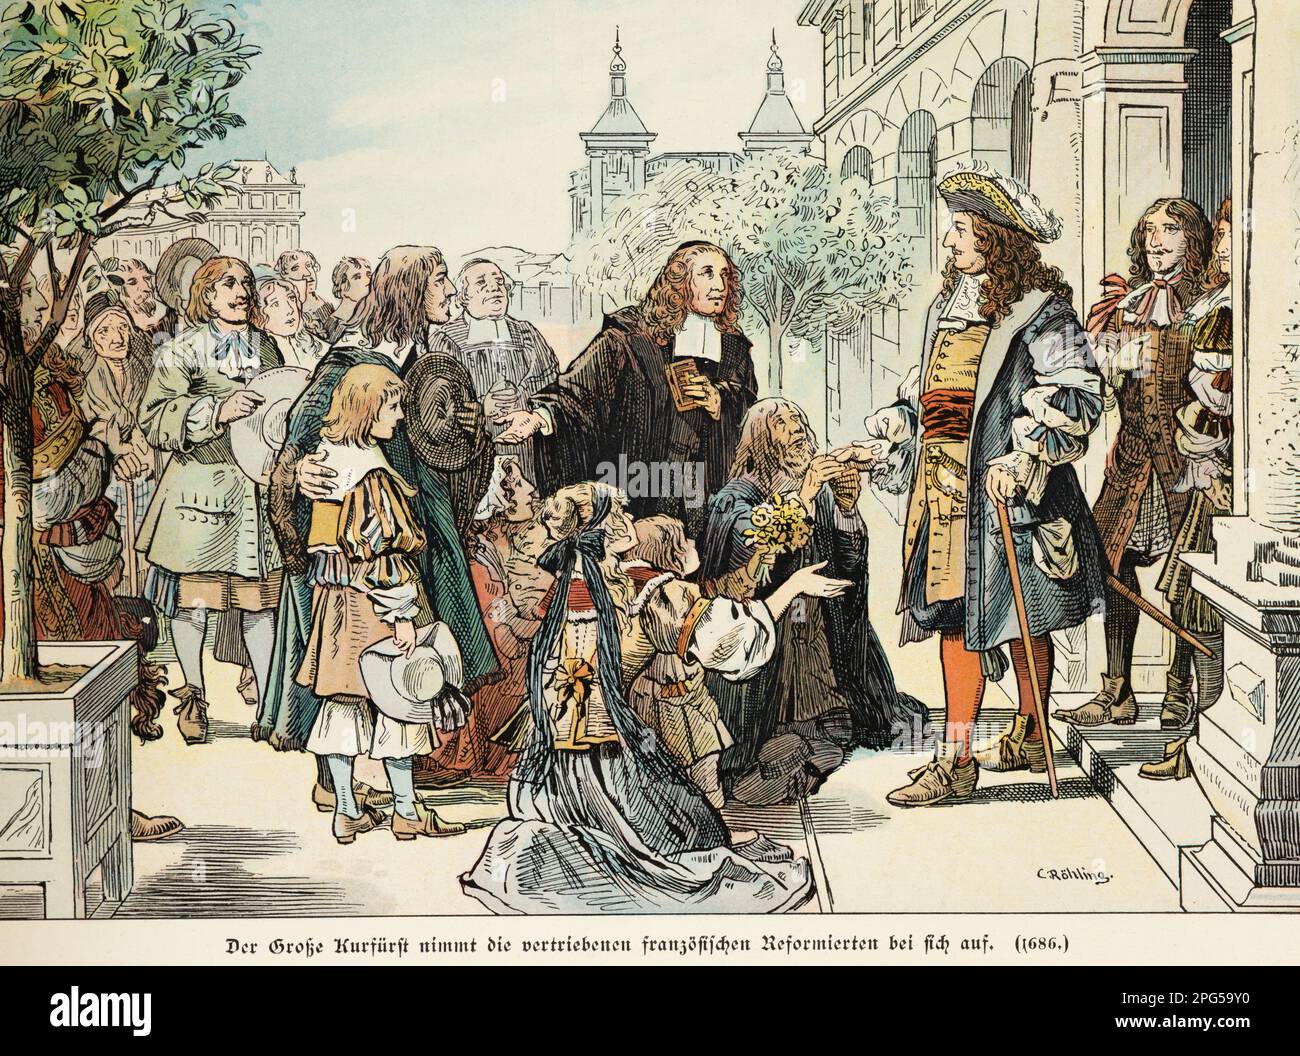 Nel 1686 il principe Friedrich Wilhelm il Grande accoglie i riformisti francesi nel suo stato, storia degli Hohenzollern, Prussia, illustrazione storica 1899 Foto Stock